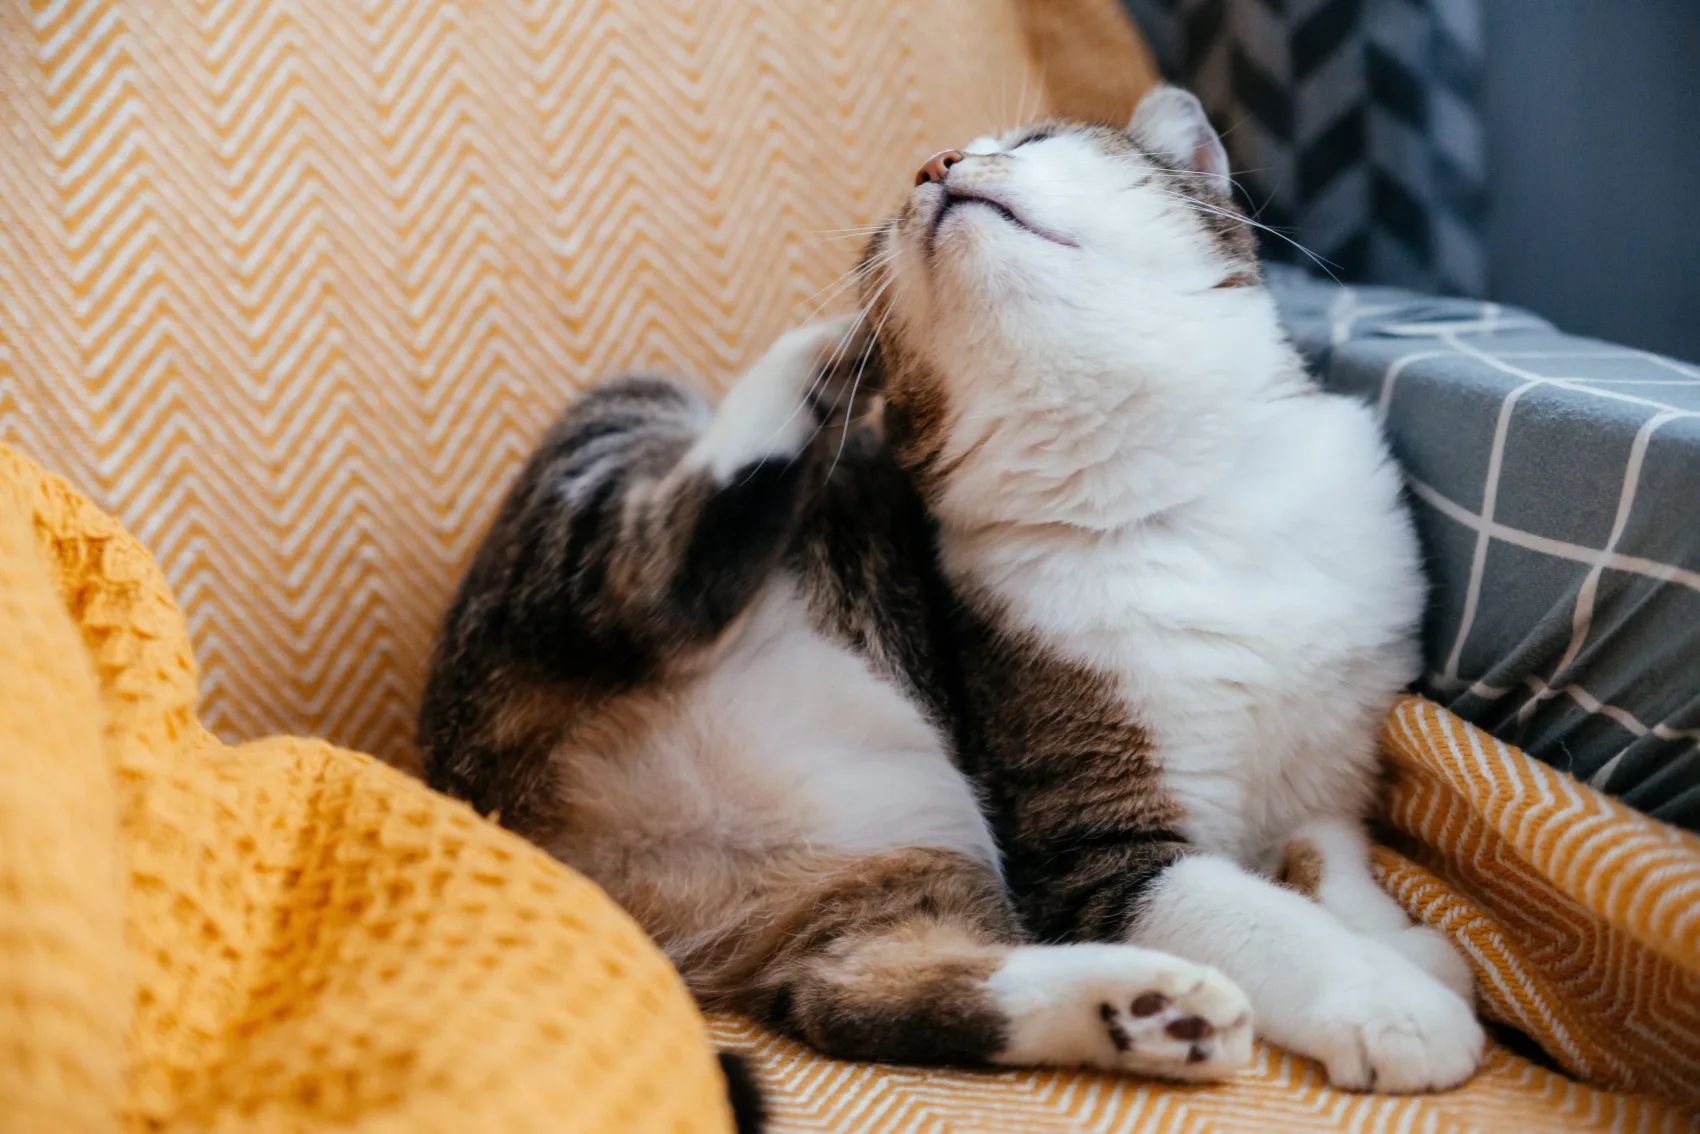 Egy szürke macska megvakarja magát egy mancsával, miközben a karosszékben ül.